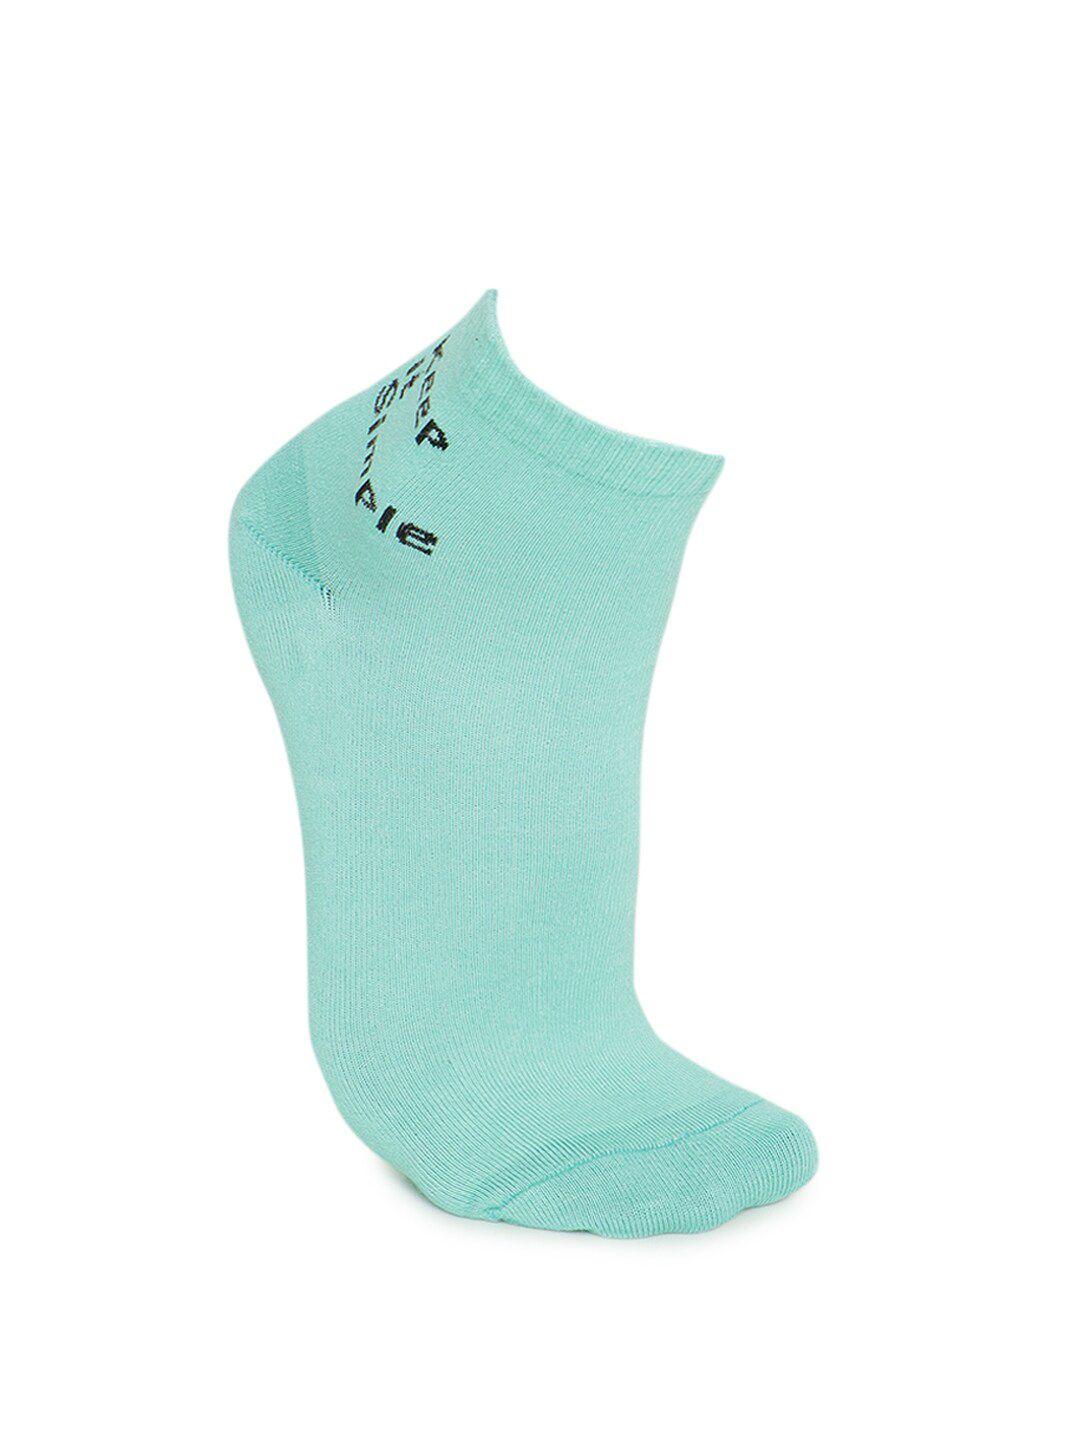 forever-21-mens-blue-cotton-socks